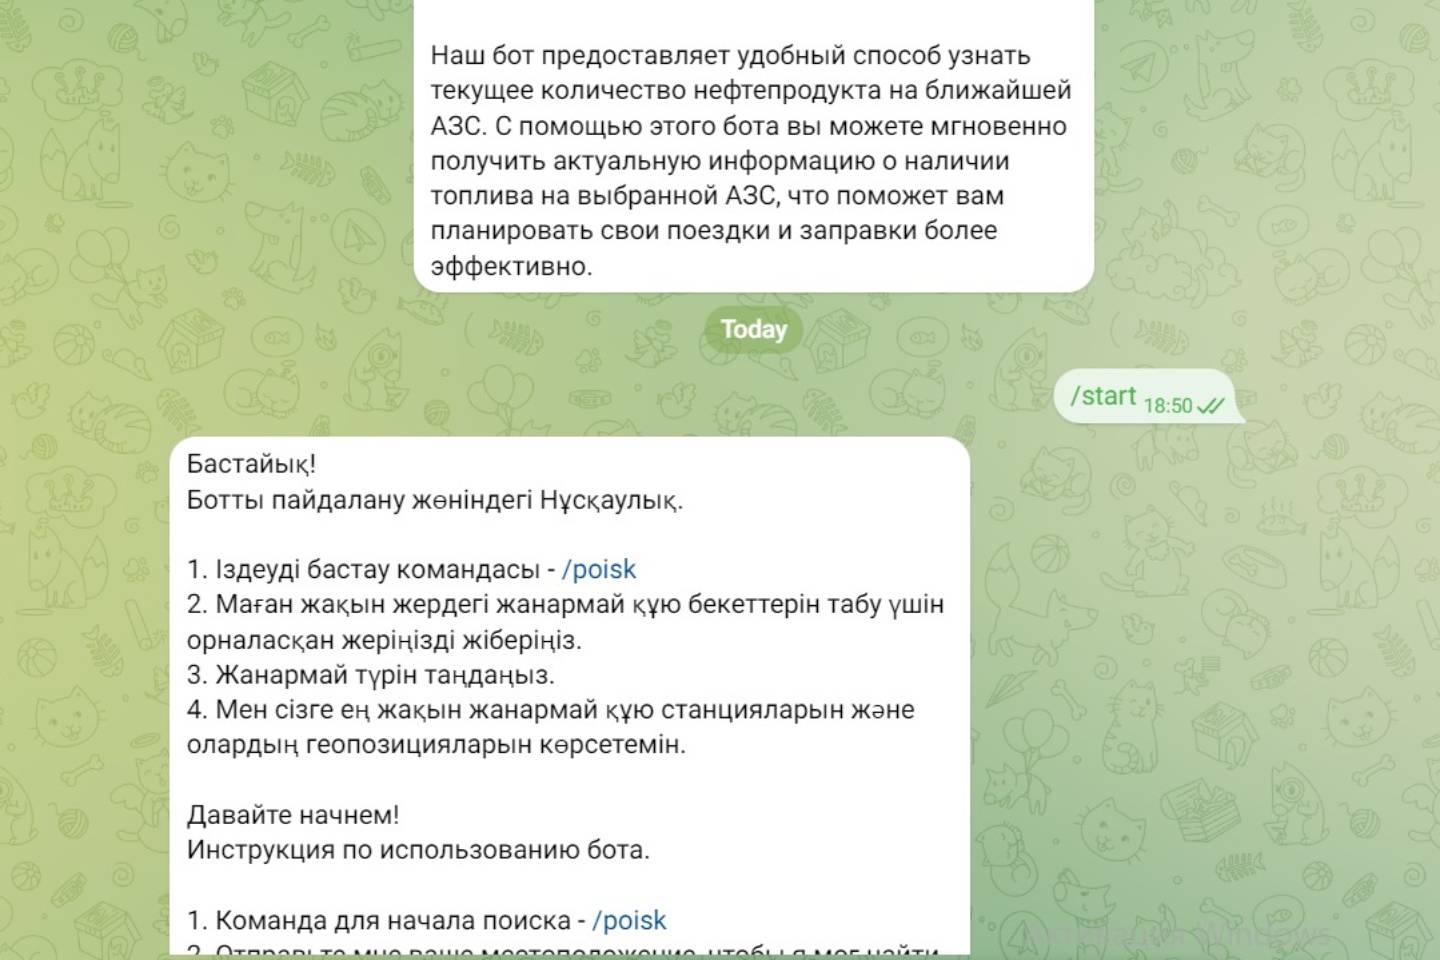 Новости Казахстана / Общество в Казахстане / Казахстанцы могут узнать подробную информацию о наличии топлива на АЗС в Telegram